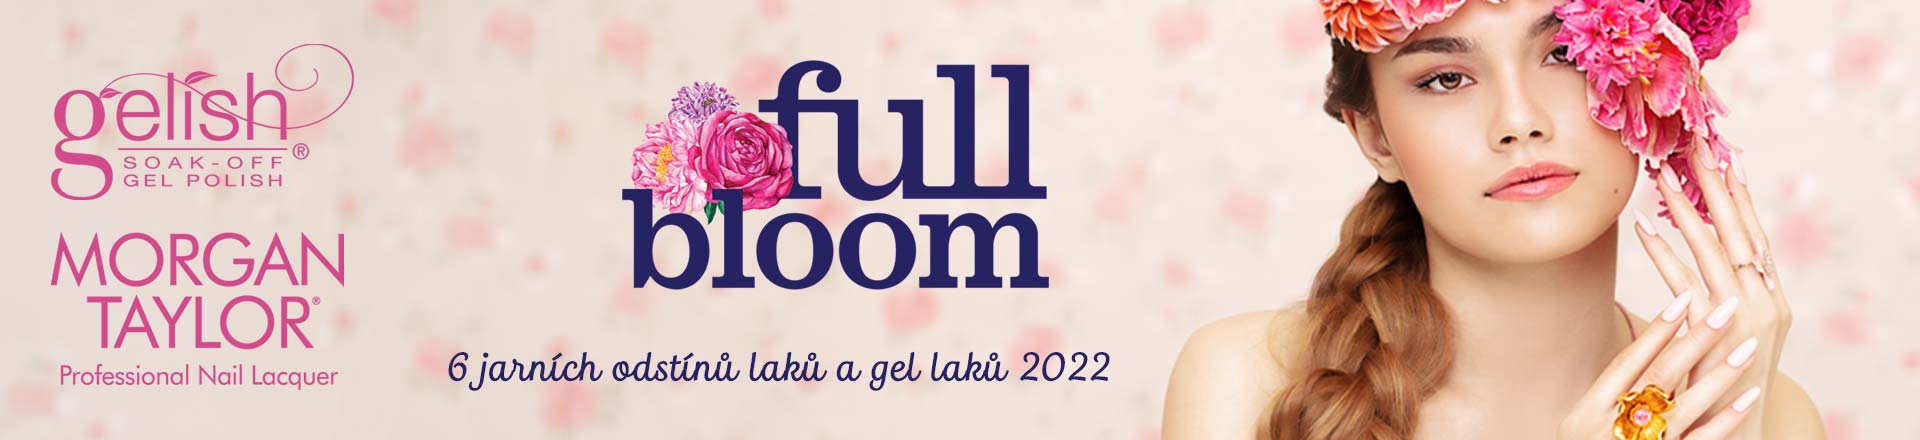 full bloom